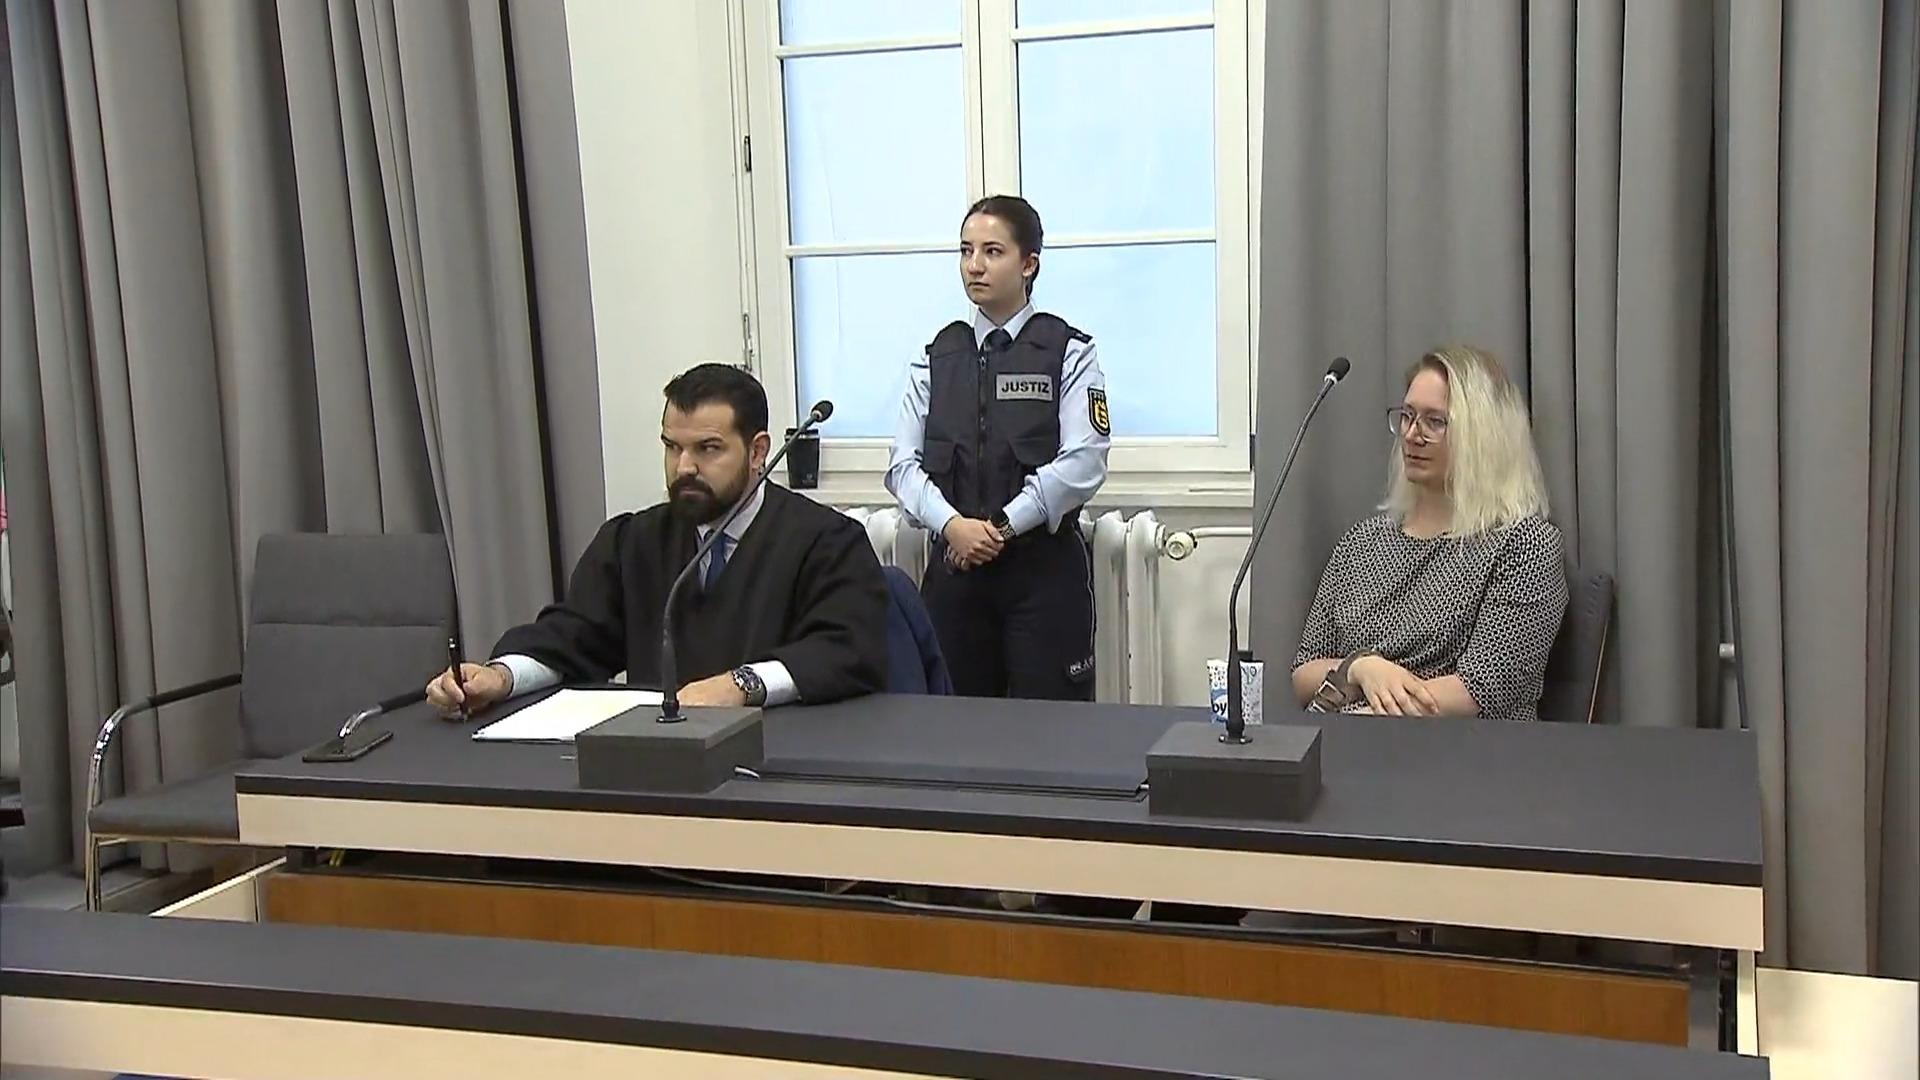 Urteil im Prozess um Hochbeet-Mord in Ravensburg Perfider Mord an ihrem Freund